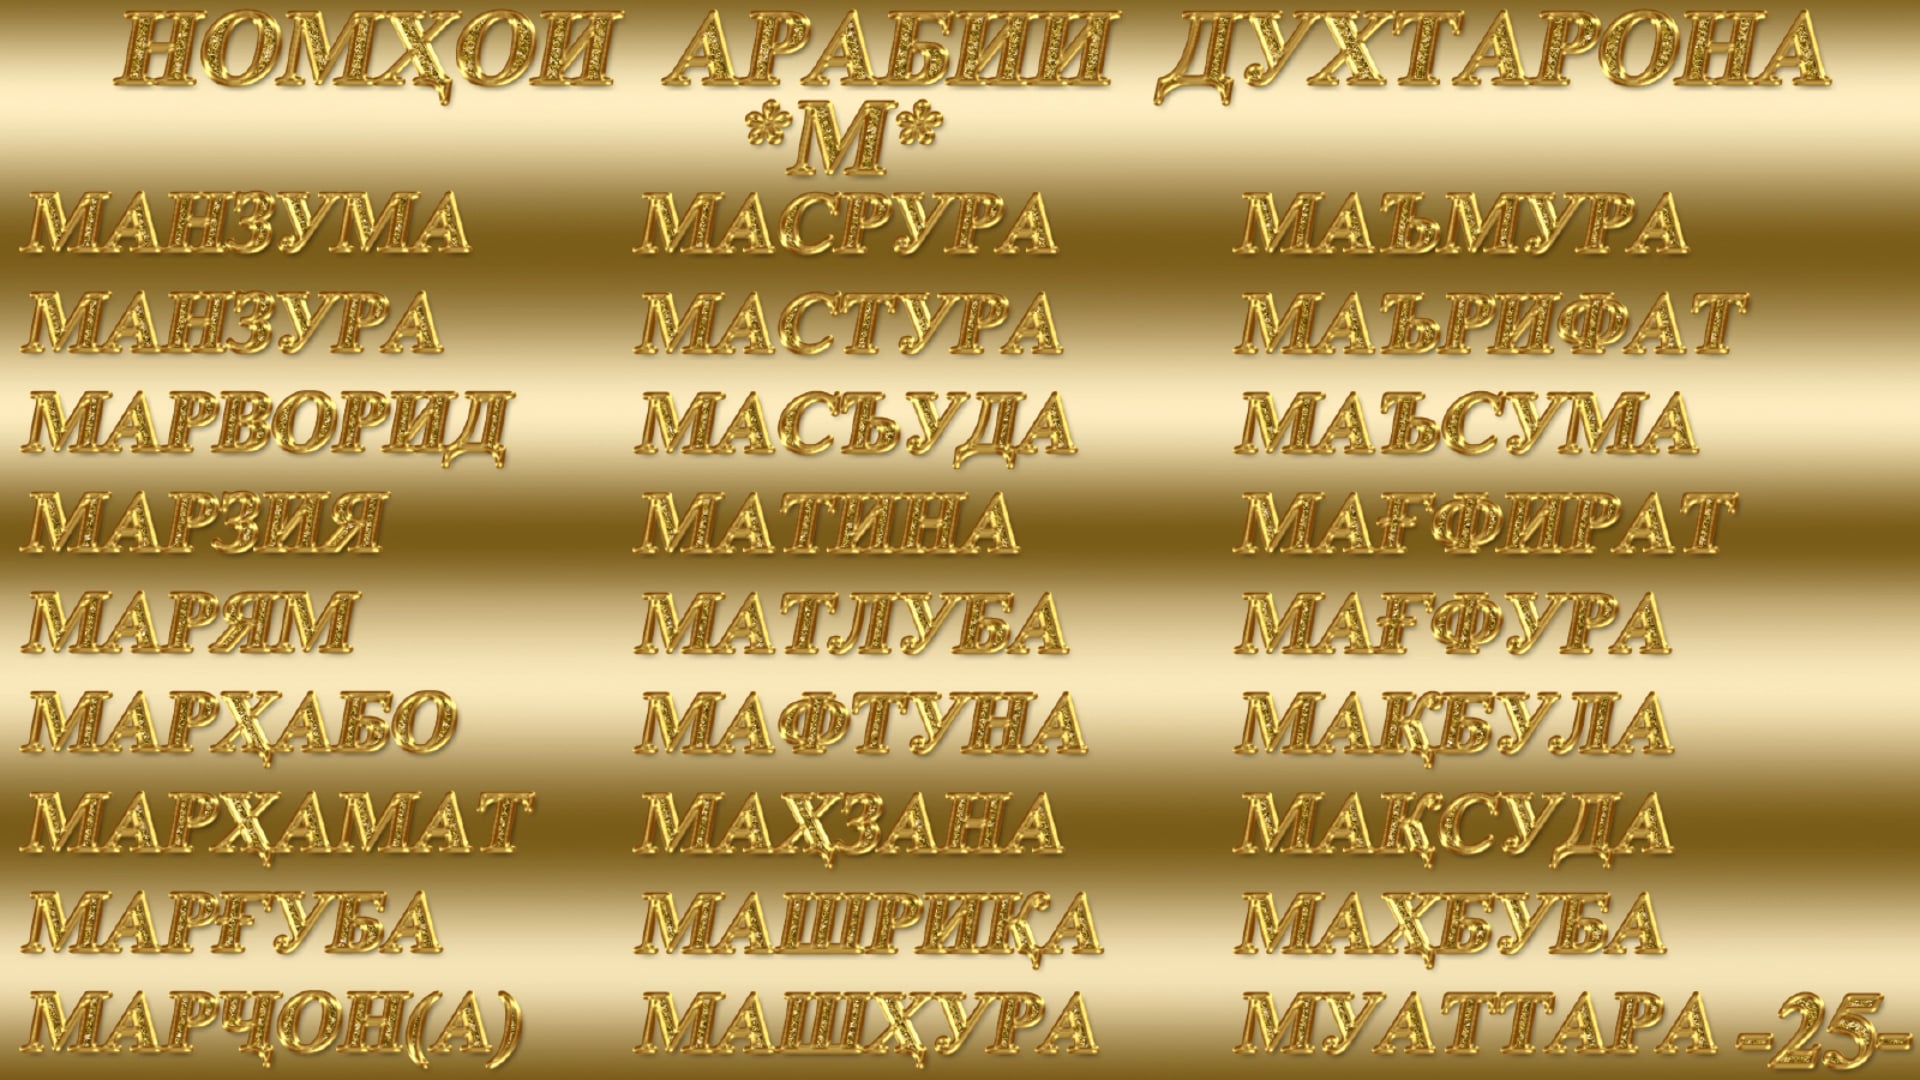 Таджикские имена